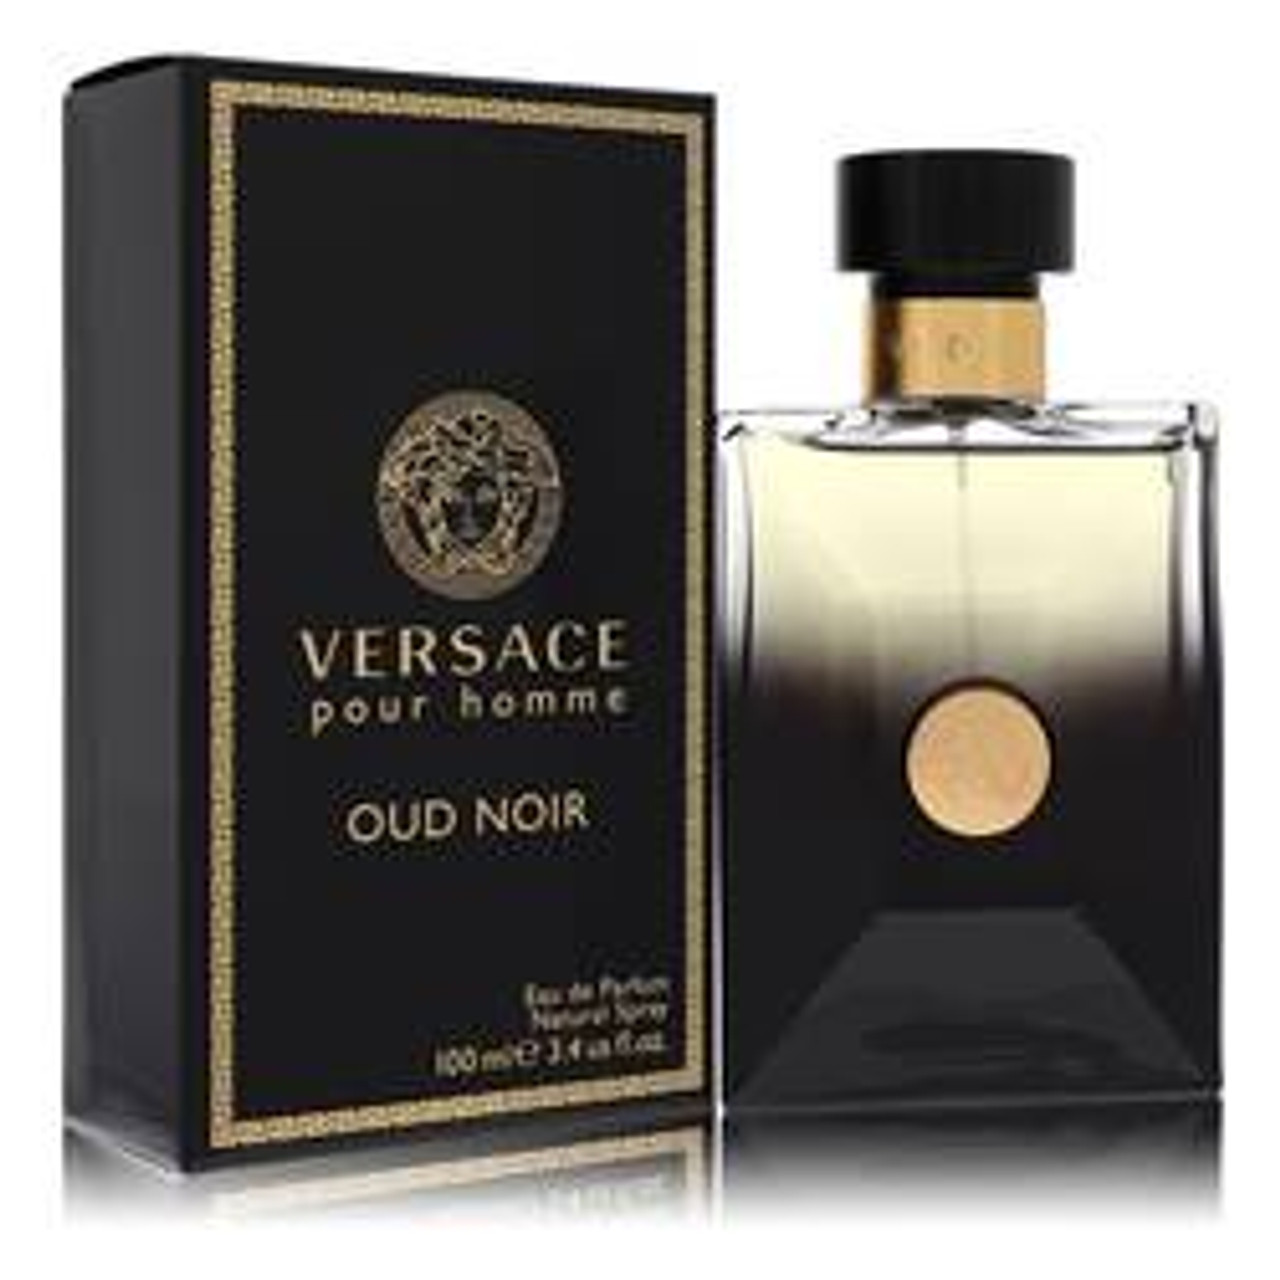 Versace Pour Homme Oud Noir Cologne By Versace Eau De Parfum Spray 3.4 oz for Men - *Pre-Order